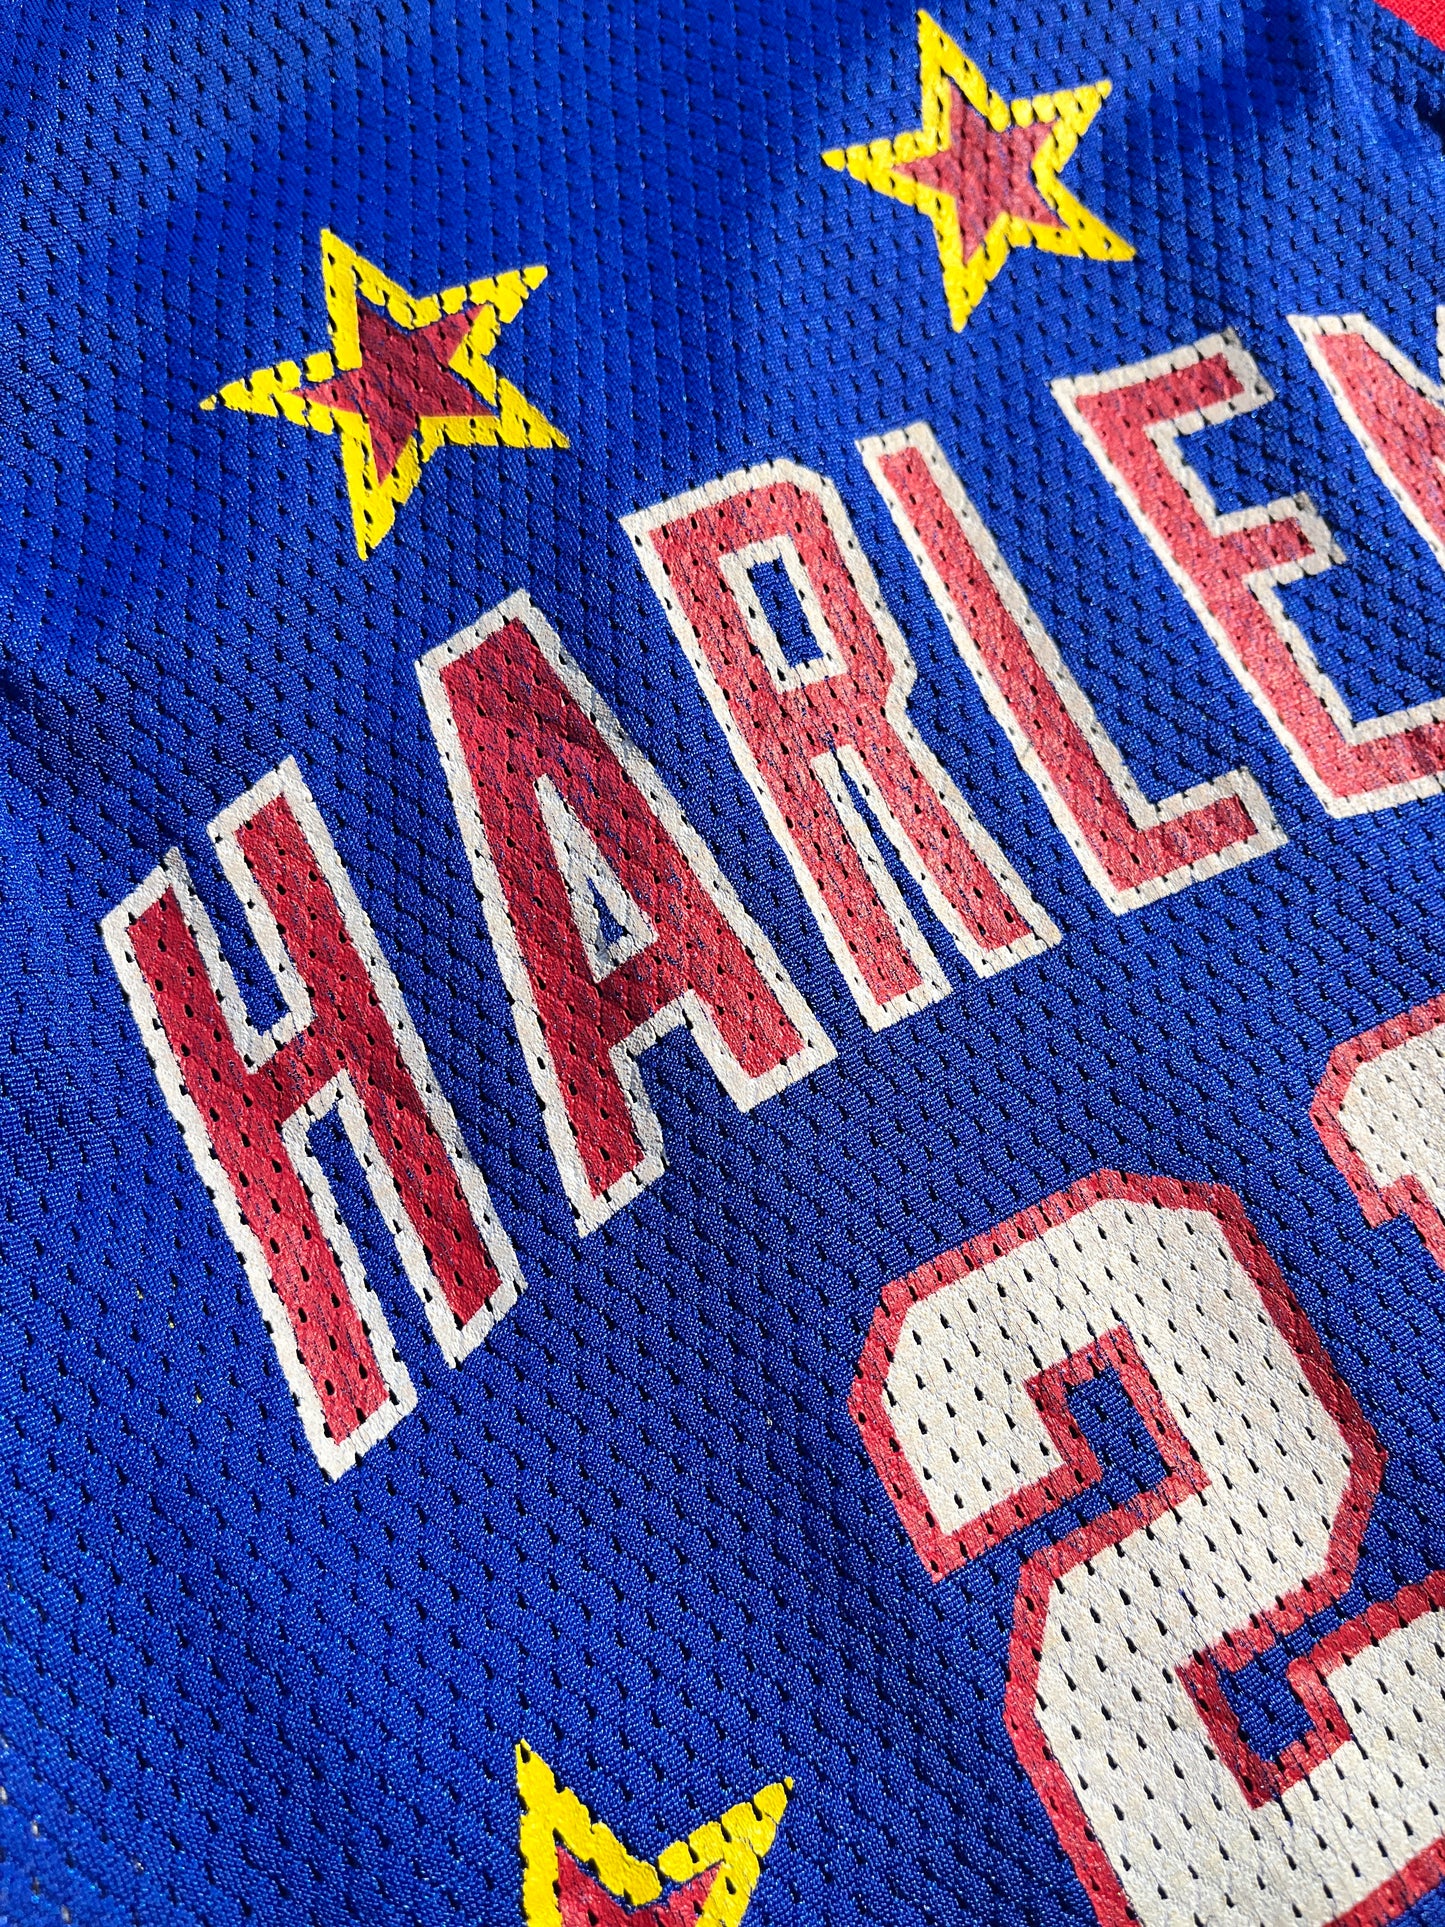 Vintage Harlem Globetrotters Jersey Basketball #21